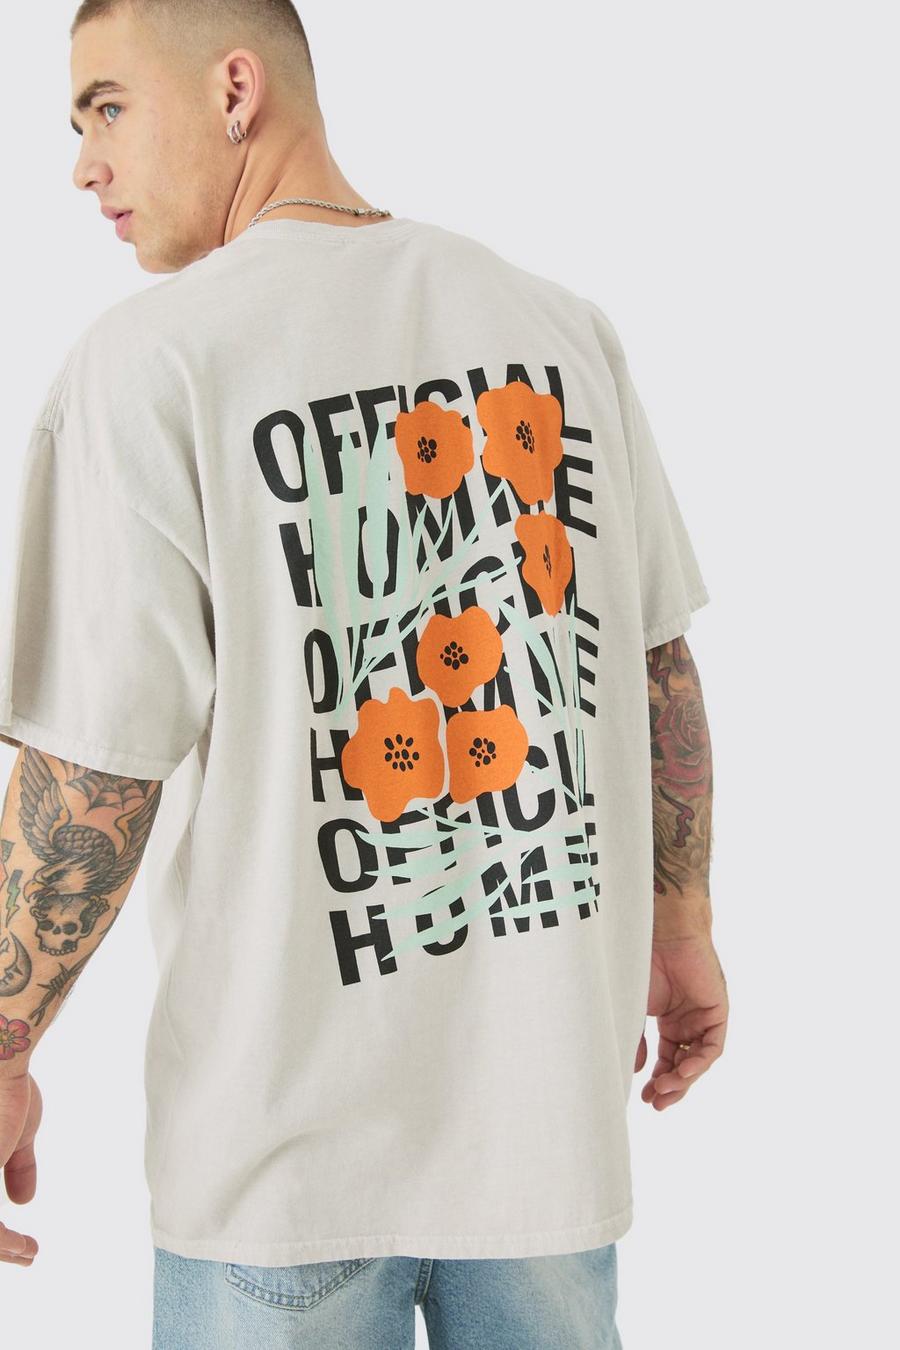 T-shirt oversize délavé - Official, Stone